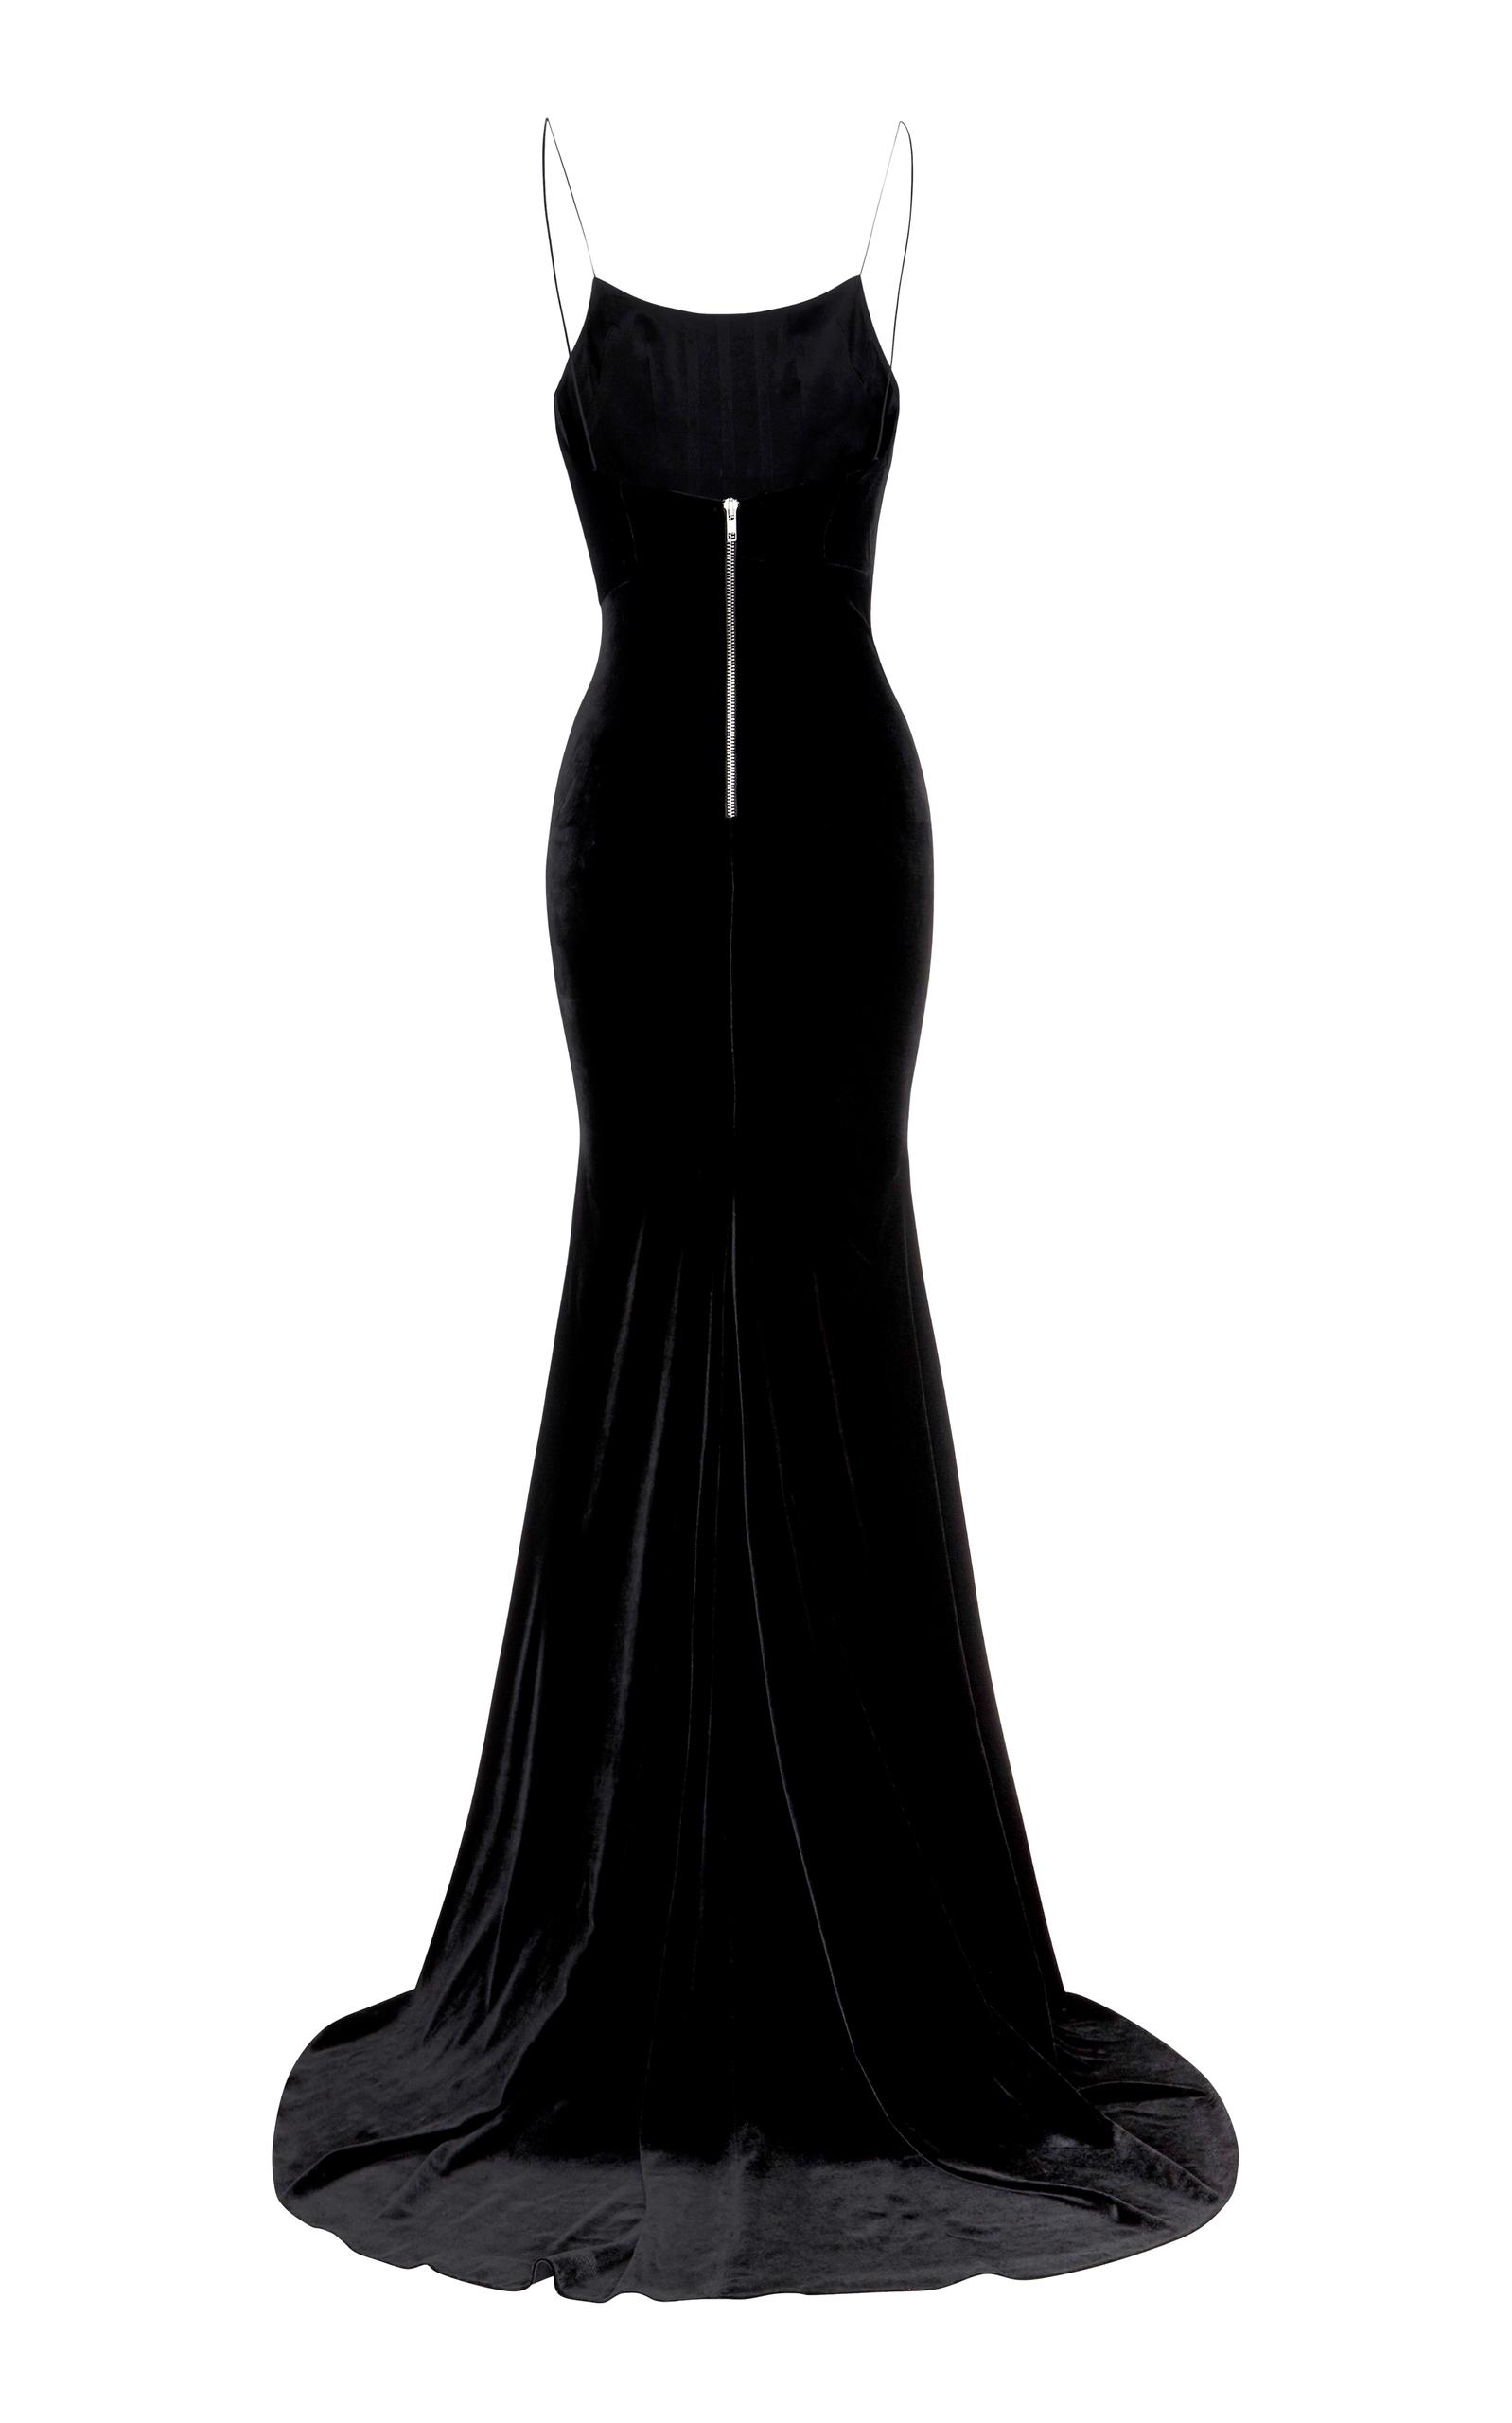 Alex Perry Kim Velvet Slip Dress in Black - Lyst